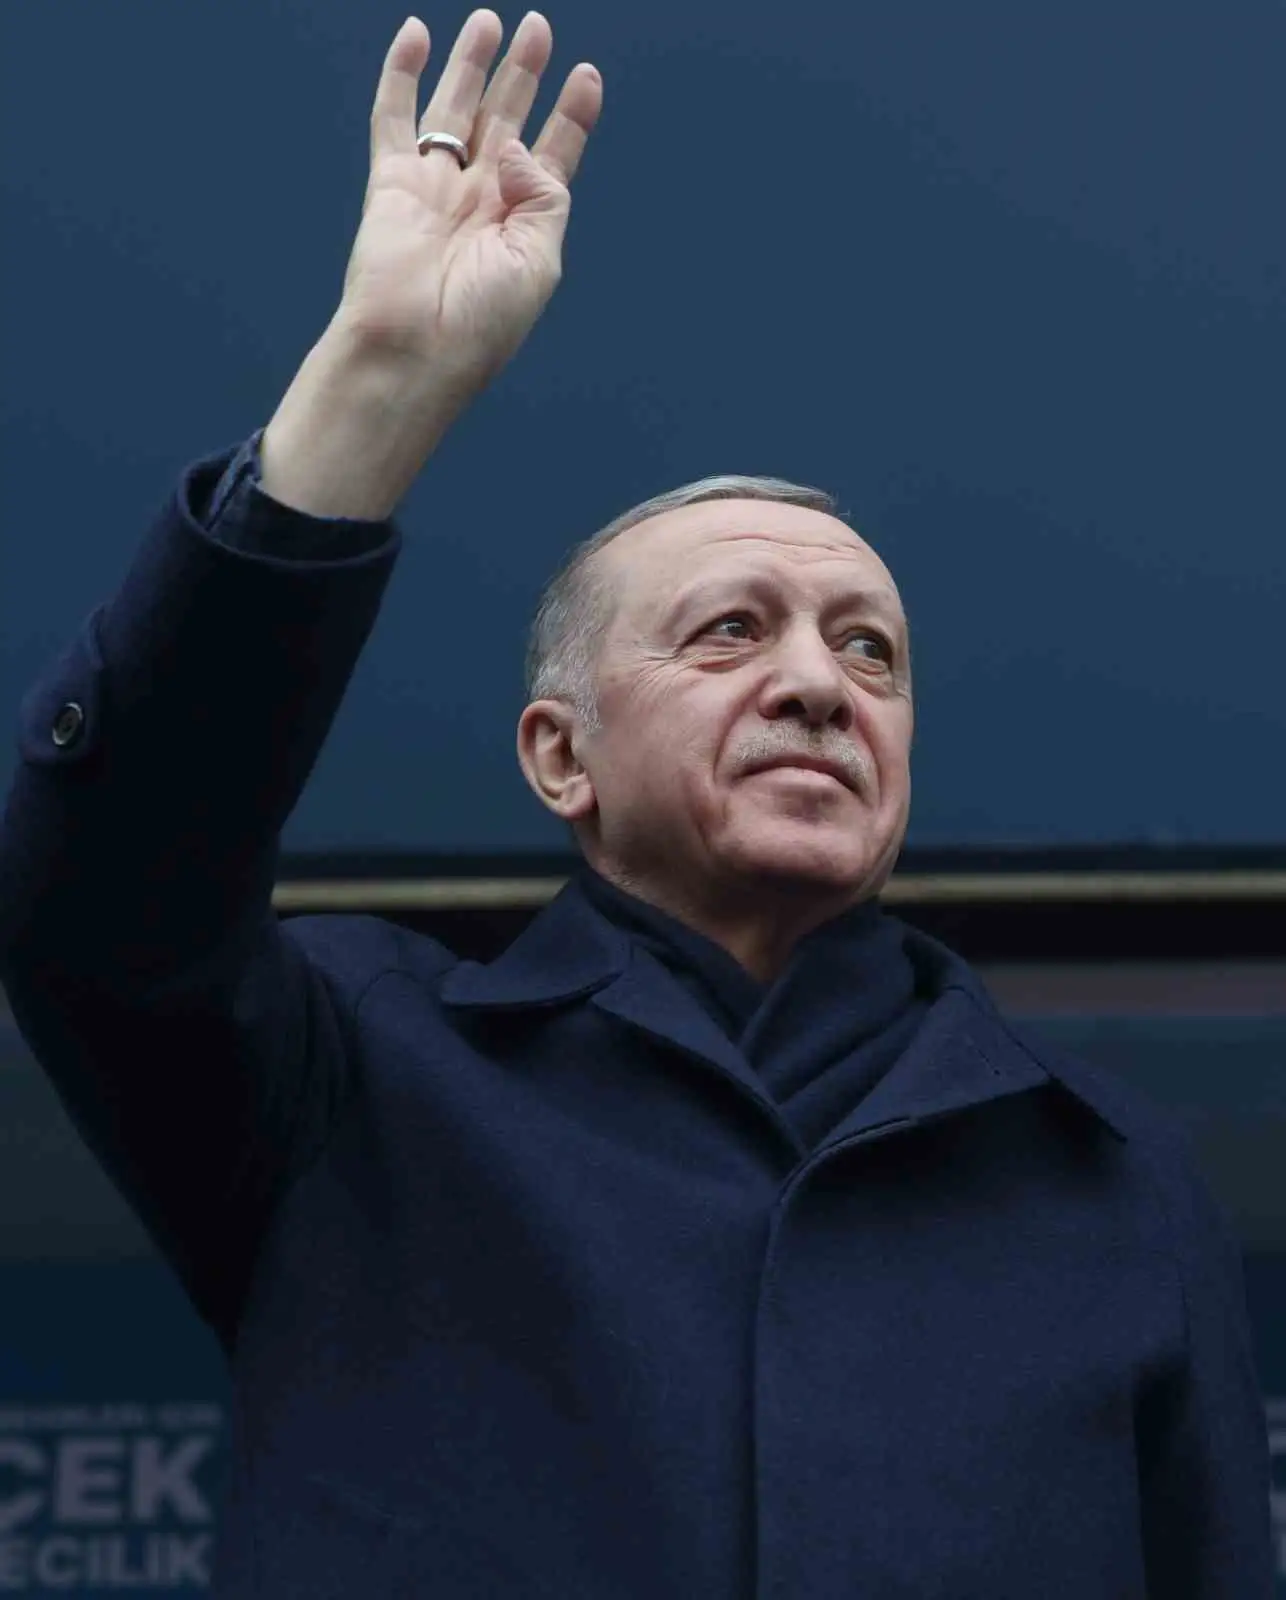 Cumhurbaşkanı Erdoğan, Ağrı mitinginde konuştu: "Başka Ağrı yok, başka Türkiye yok" 